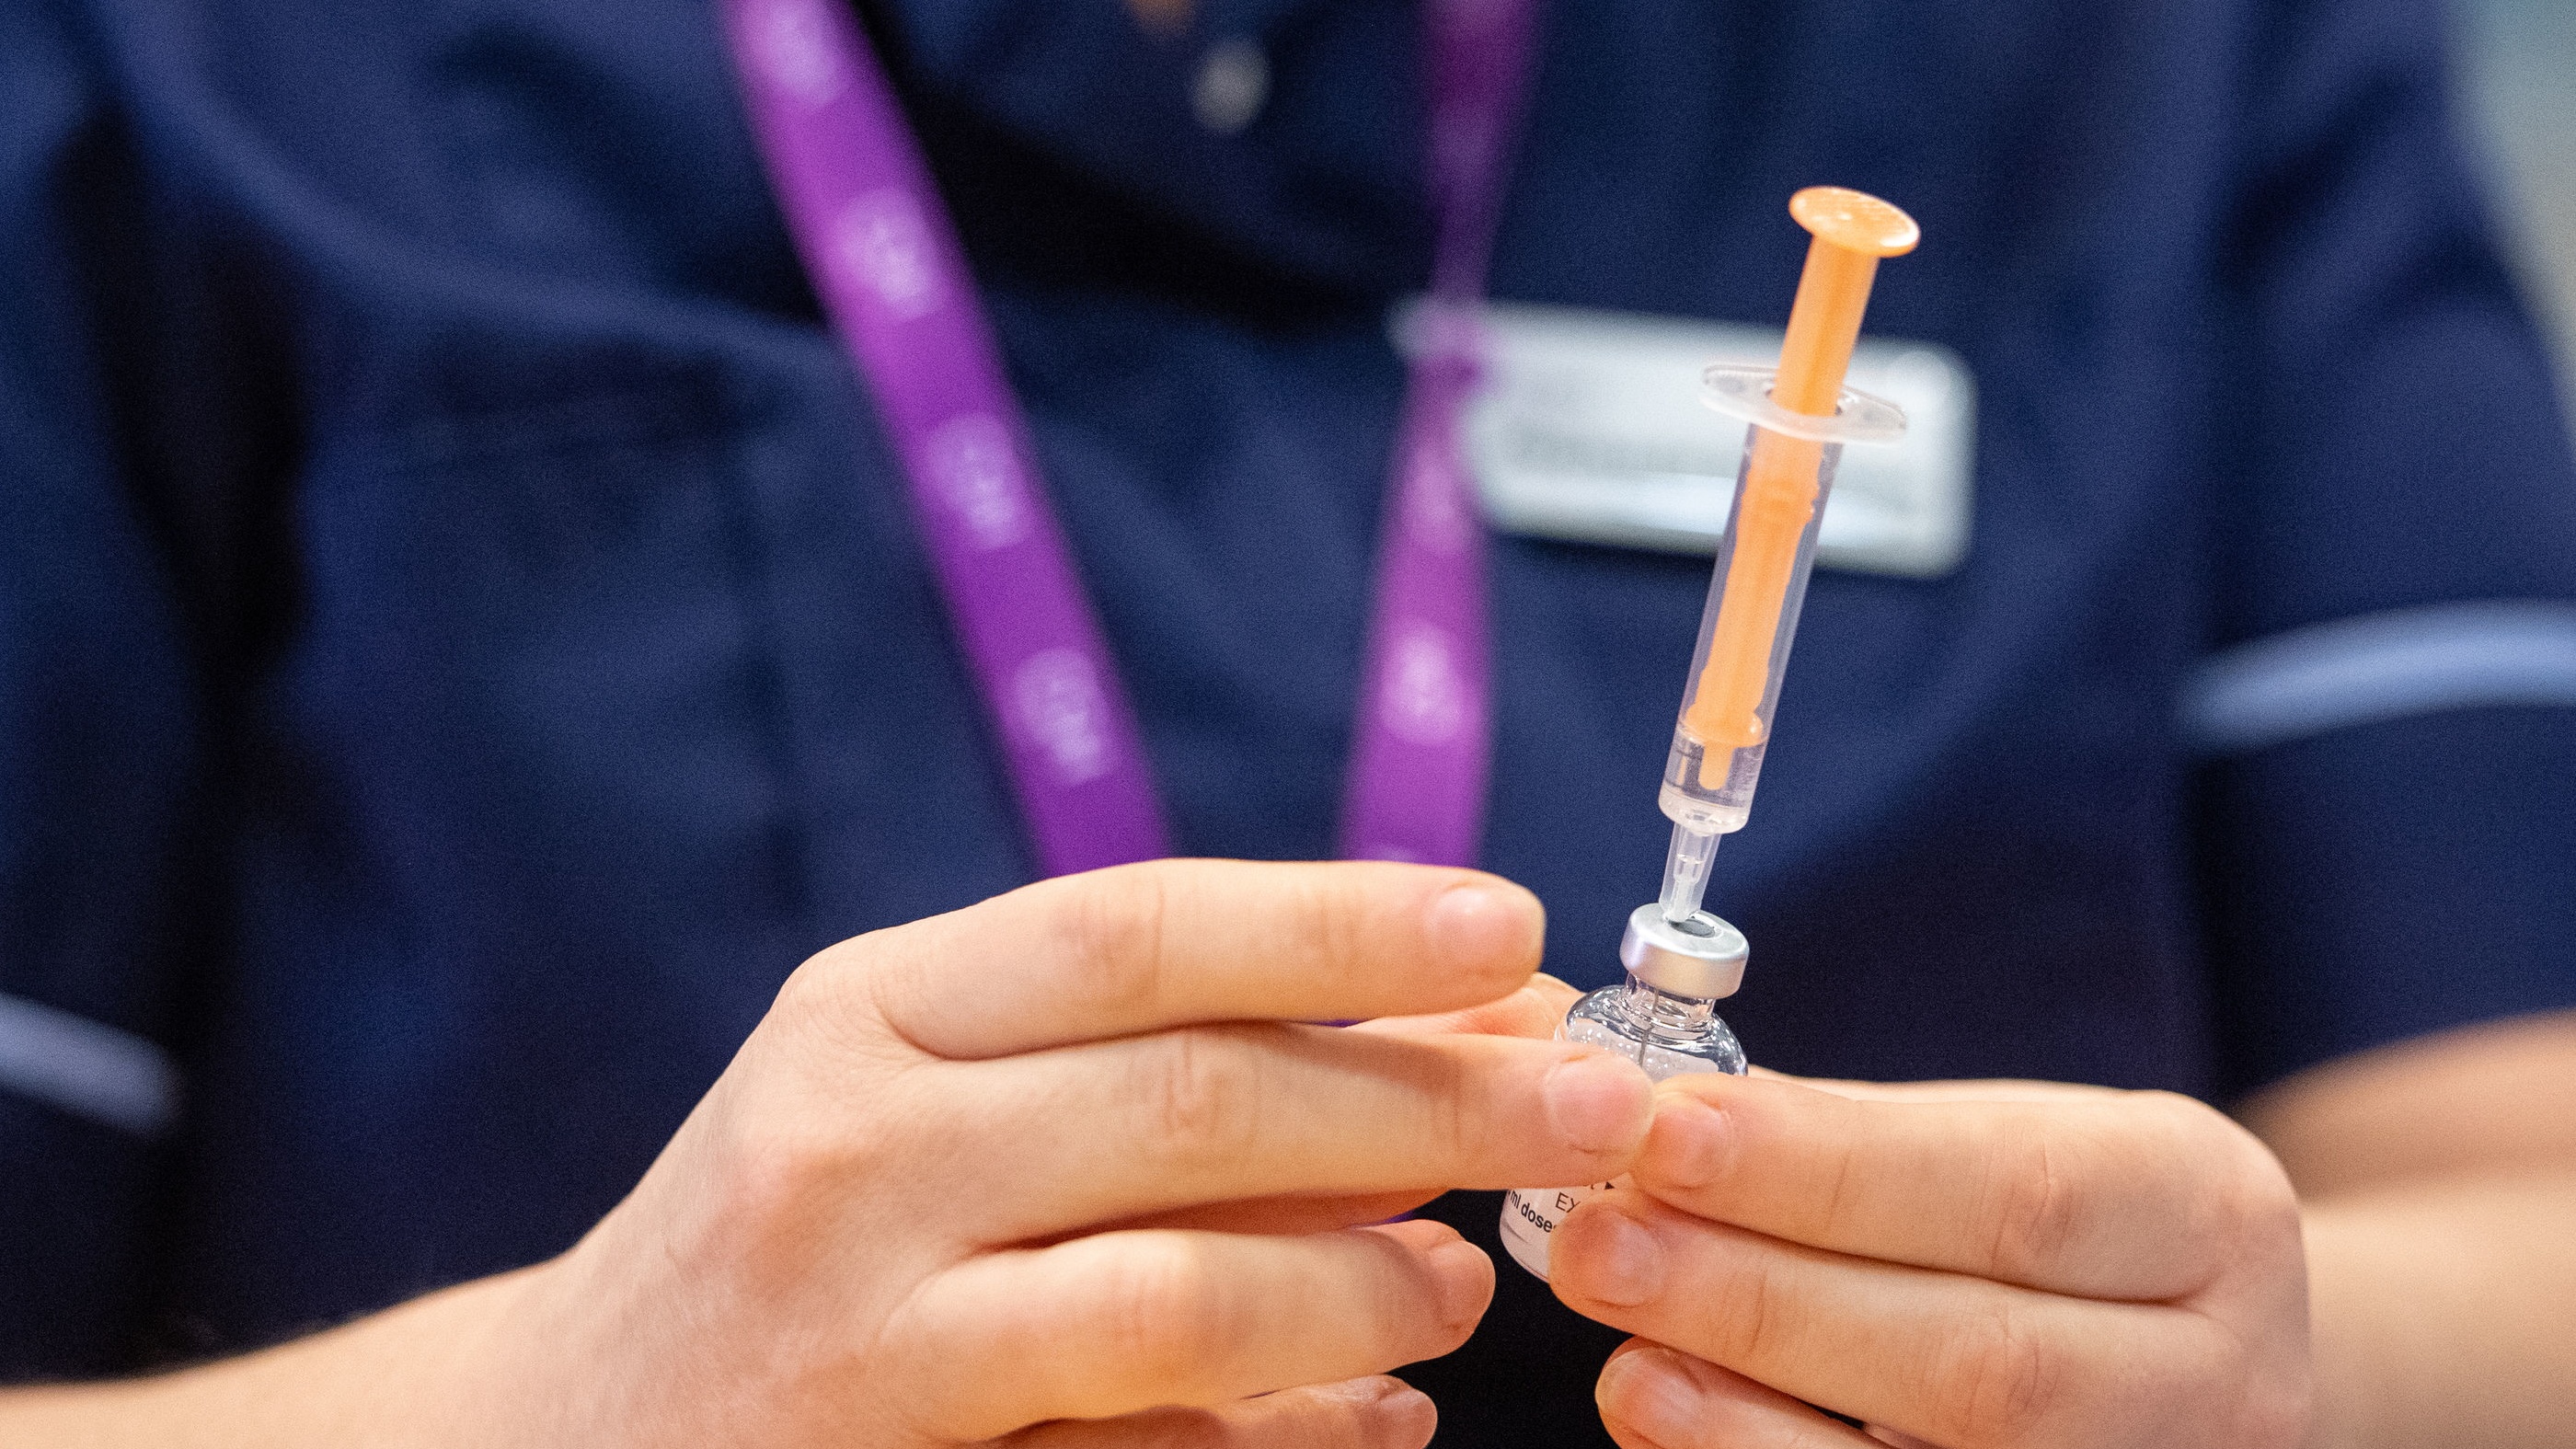 NHS staff prepare to administer the Oxford/AstraZeneca Covid-19 vaccine